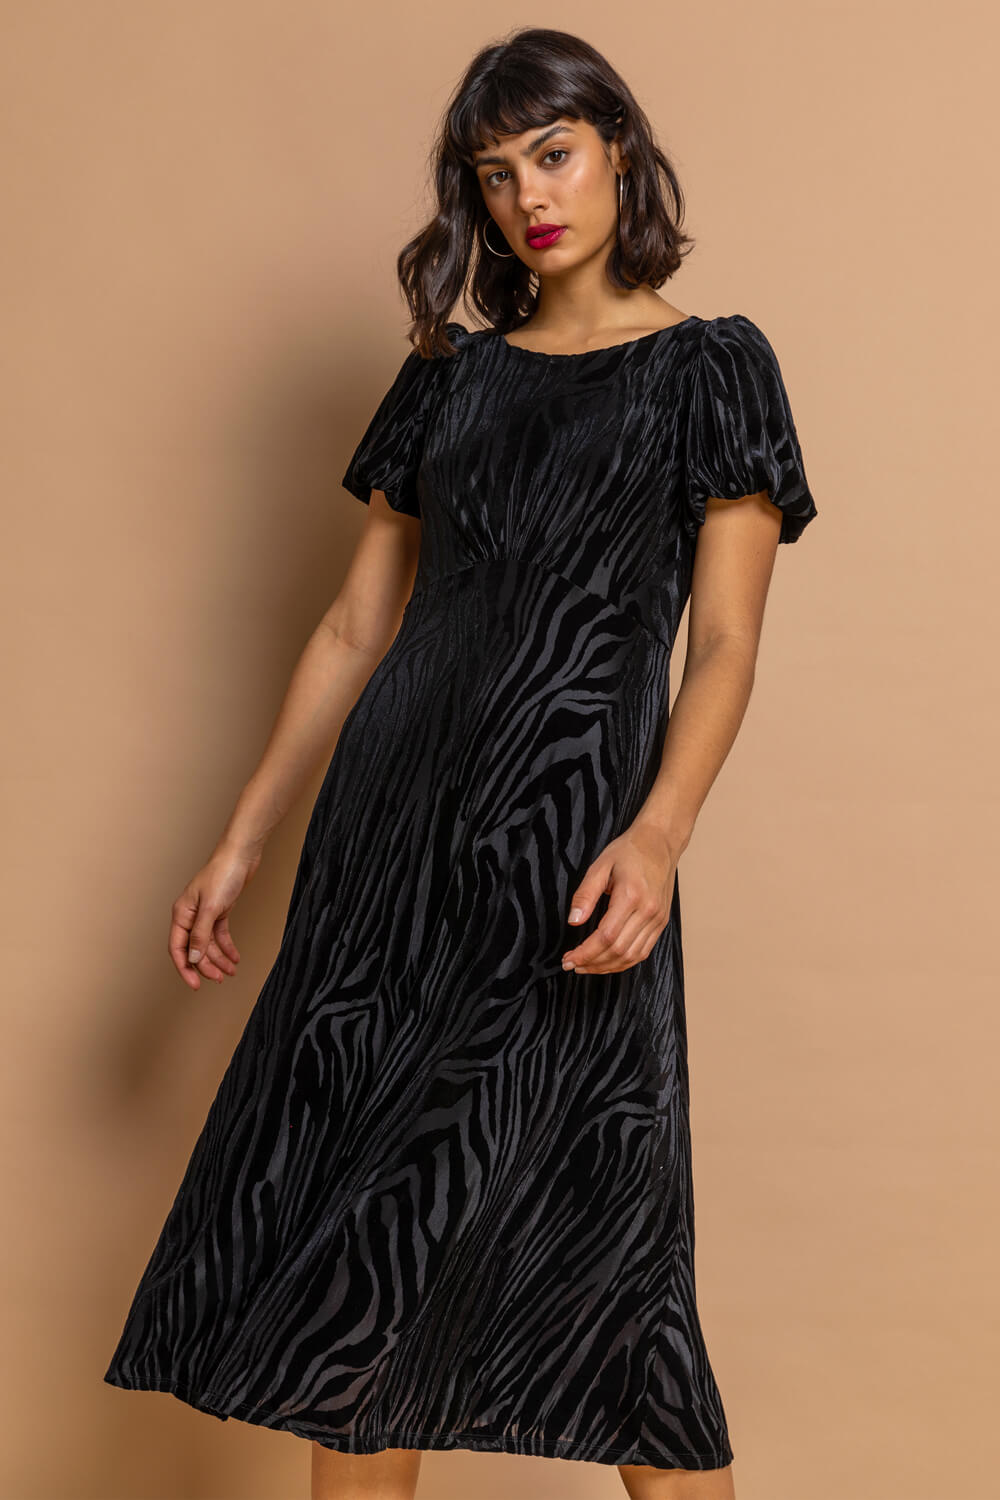 Black Animal Print Burnout Velvet Dress, Image 3 of 5